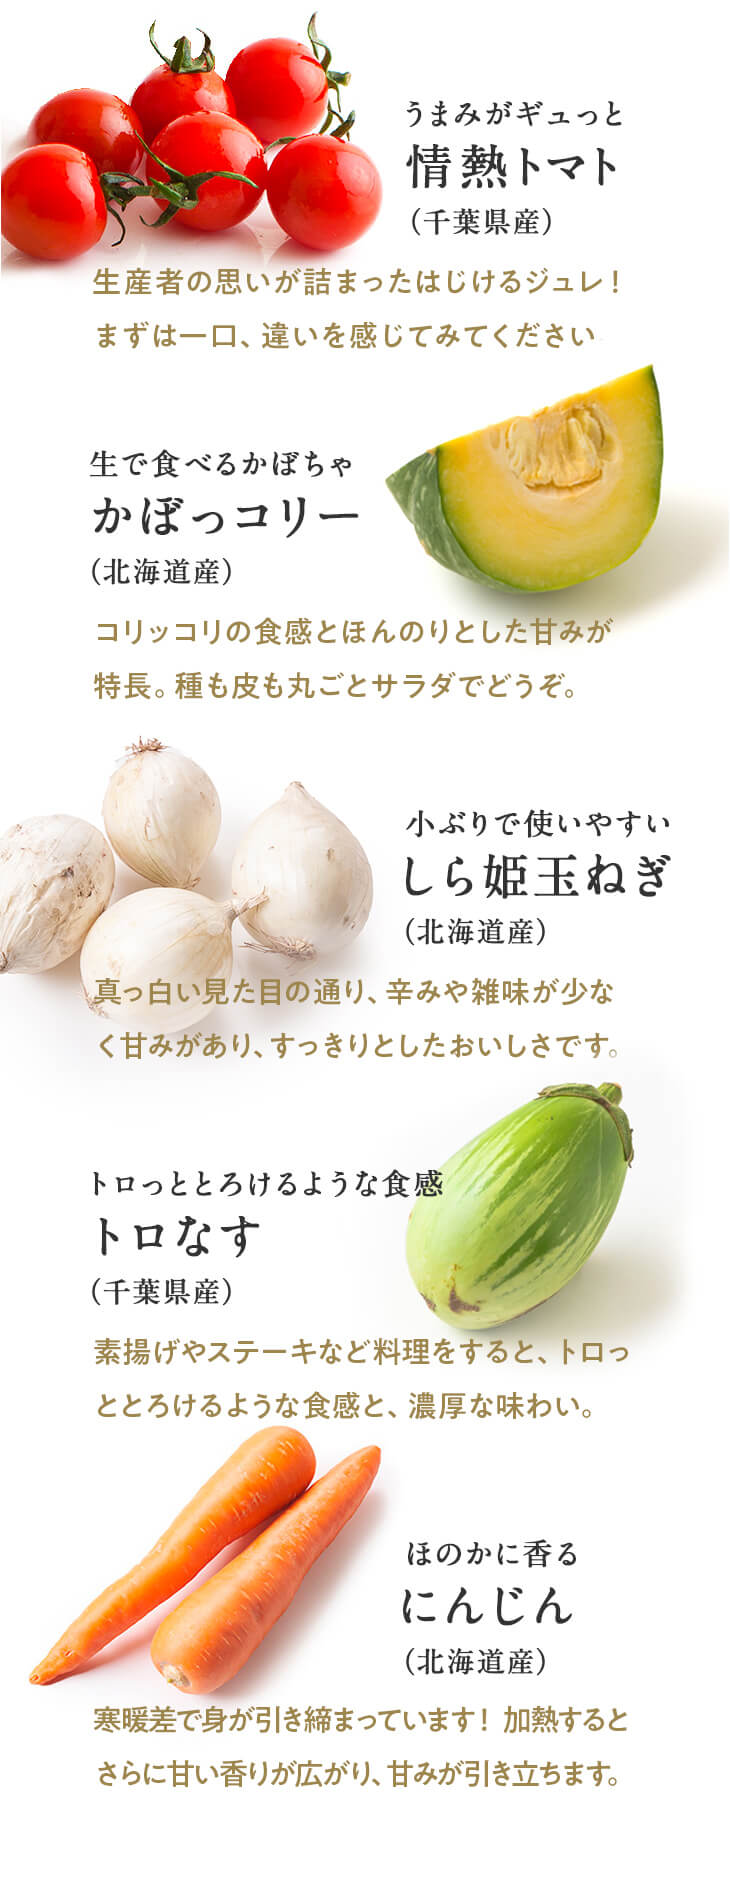 おすすめの野菜5品セット